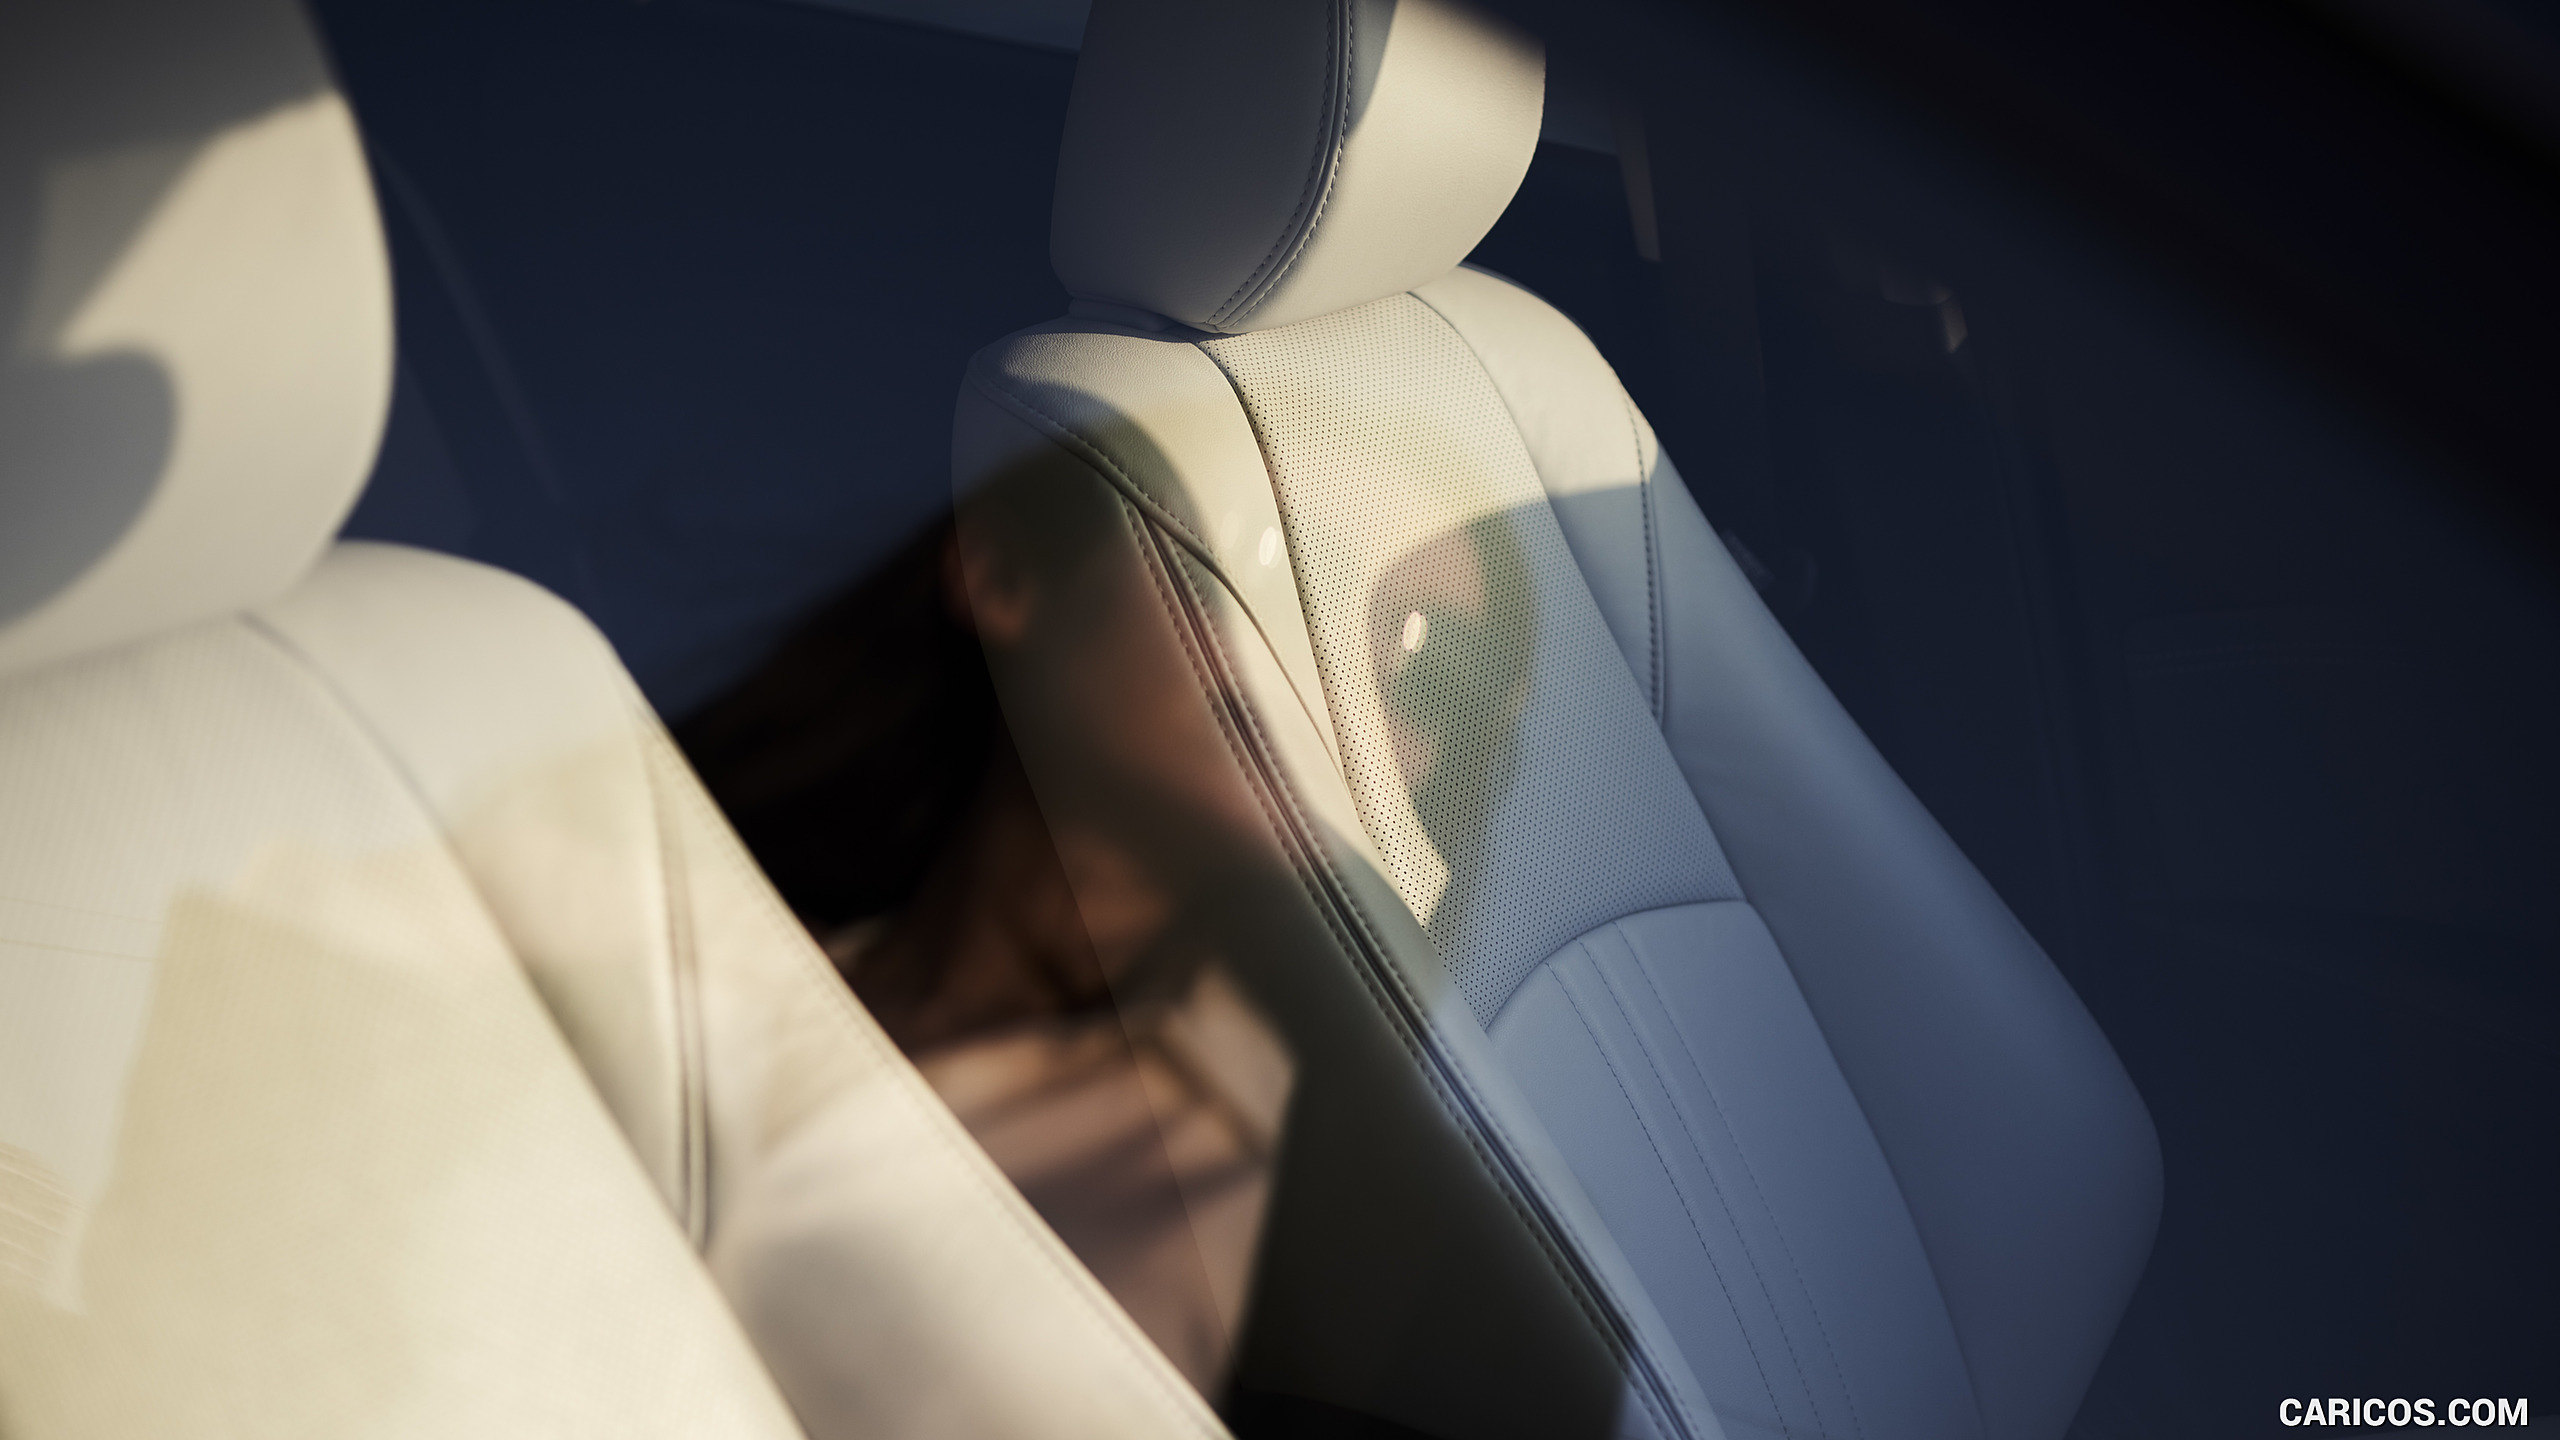 2019 Mazda CX-3 - Interior, Seats, #81 of 85